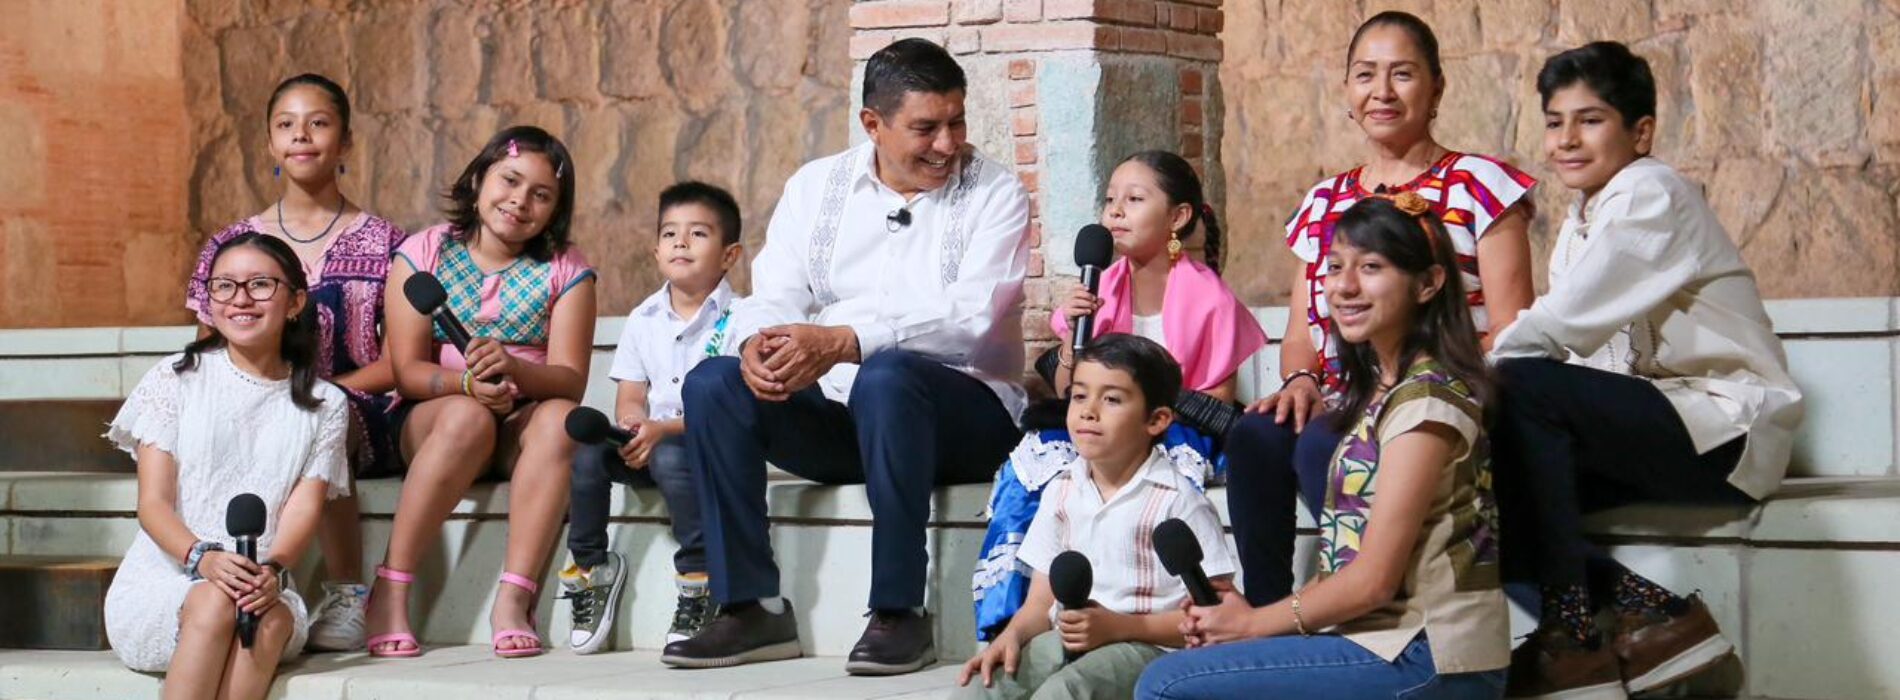 Gobernador Salomón Jara e Irma Bolaños Quijano conviven y dialogan con niñas y niños en el Jueves de Gozona